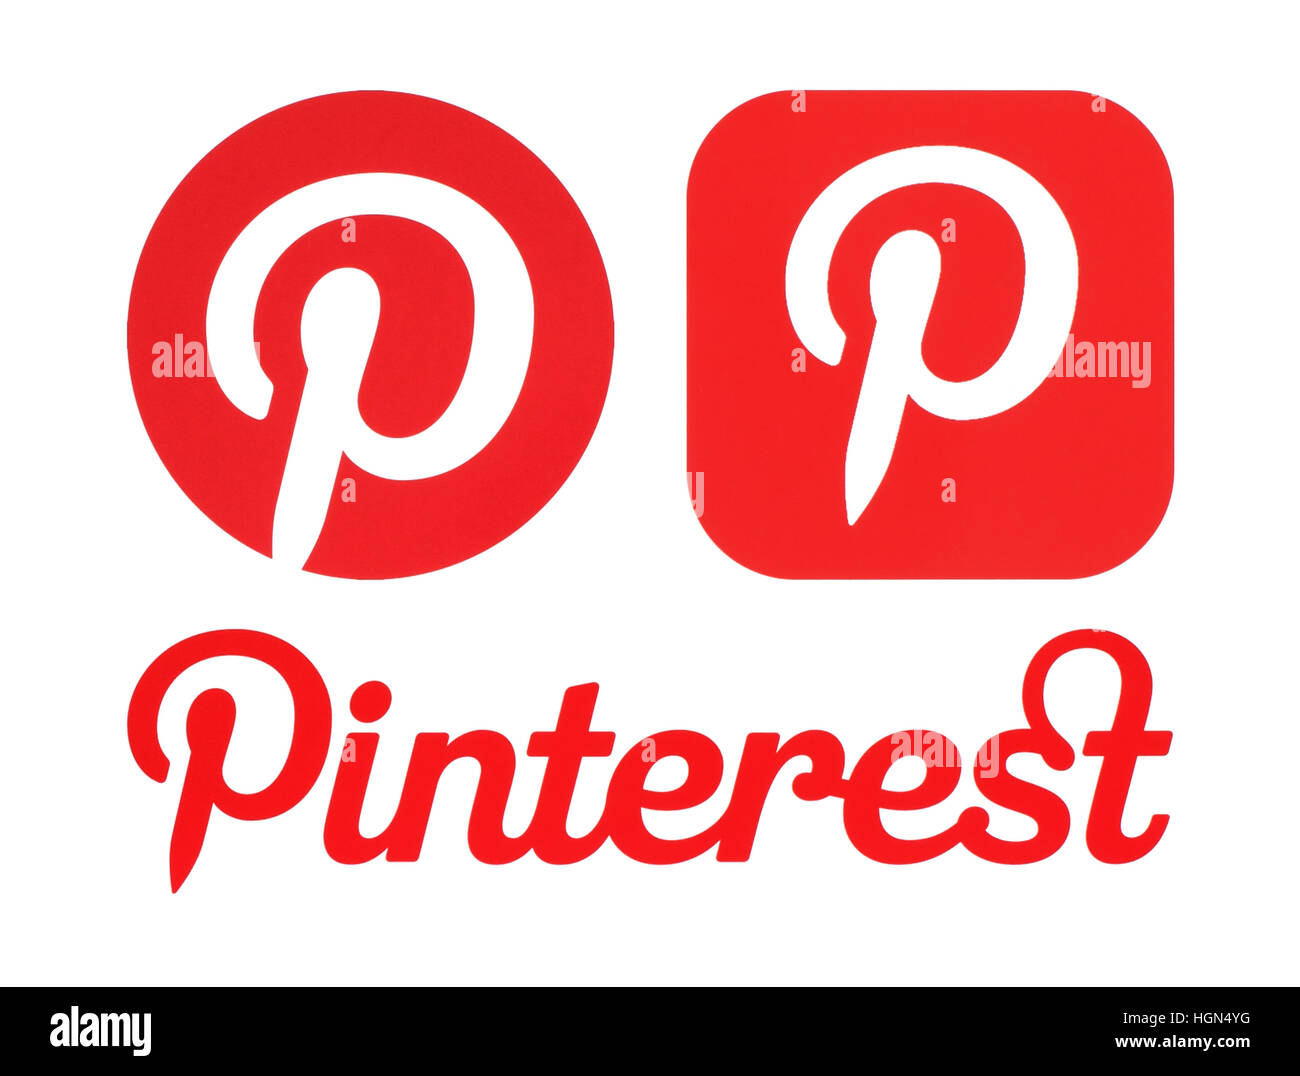 Kiew, Ukraine - 30. Mai 2016: Pinterest Logos auf weißem Papier gedruckt. Pinterest ist Foto-sharing-Website. Stockfoto